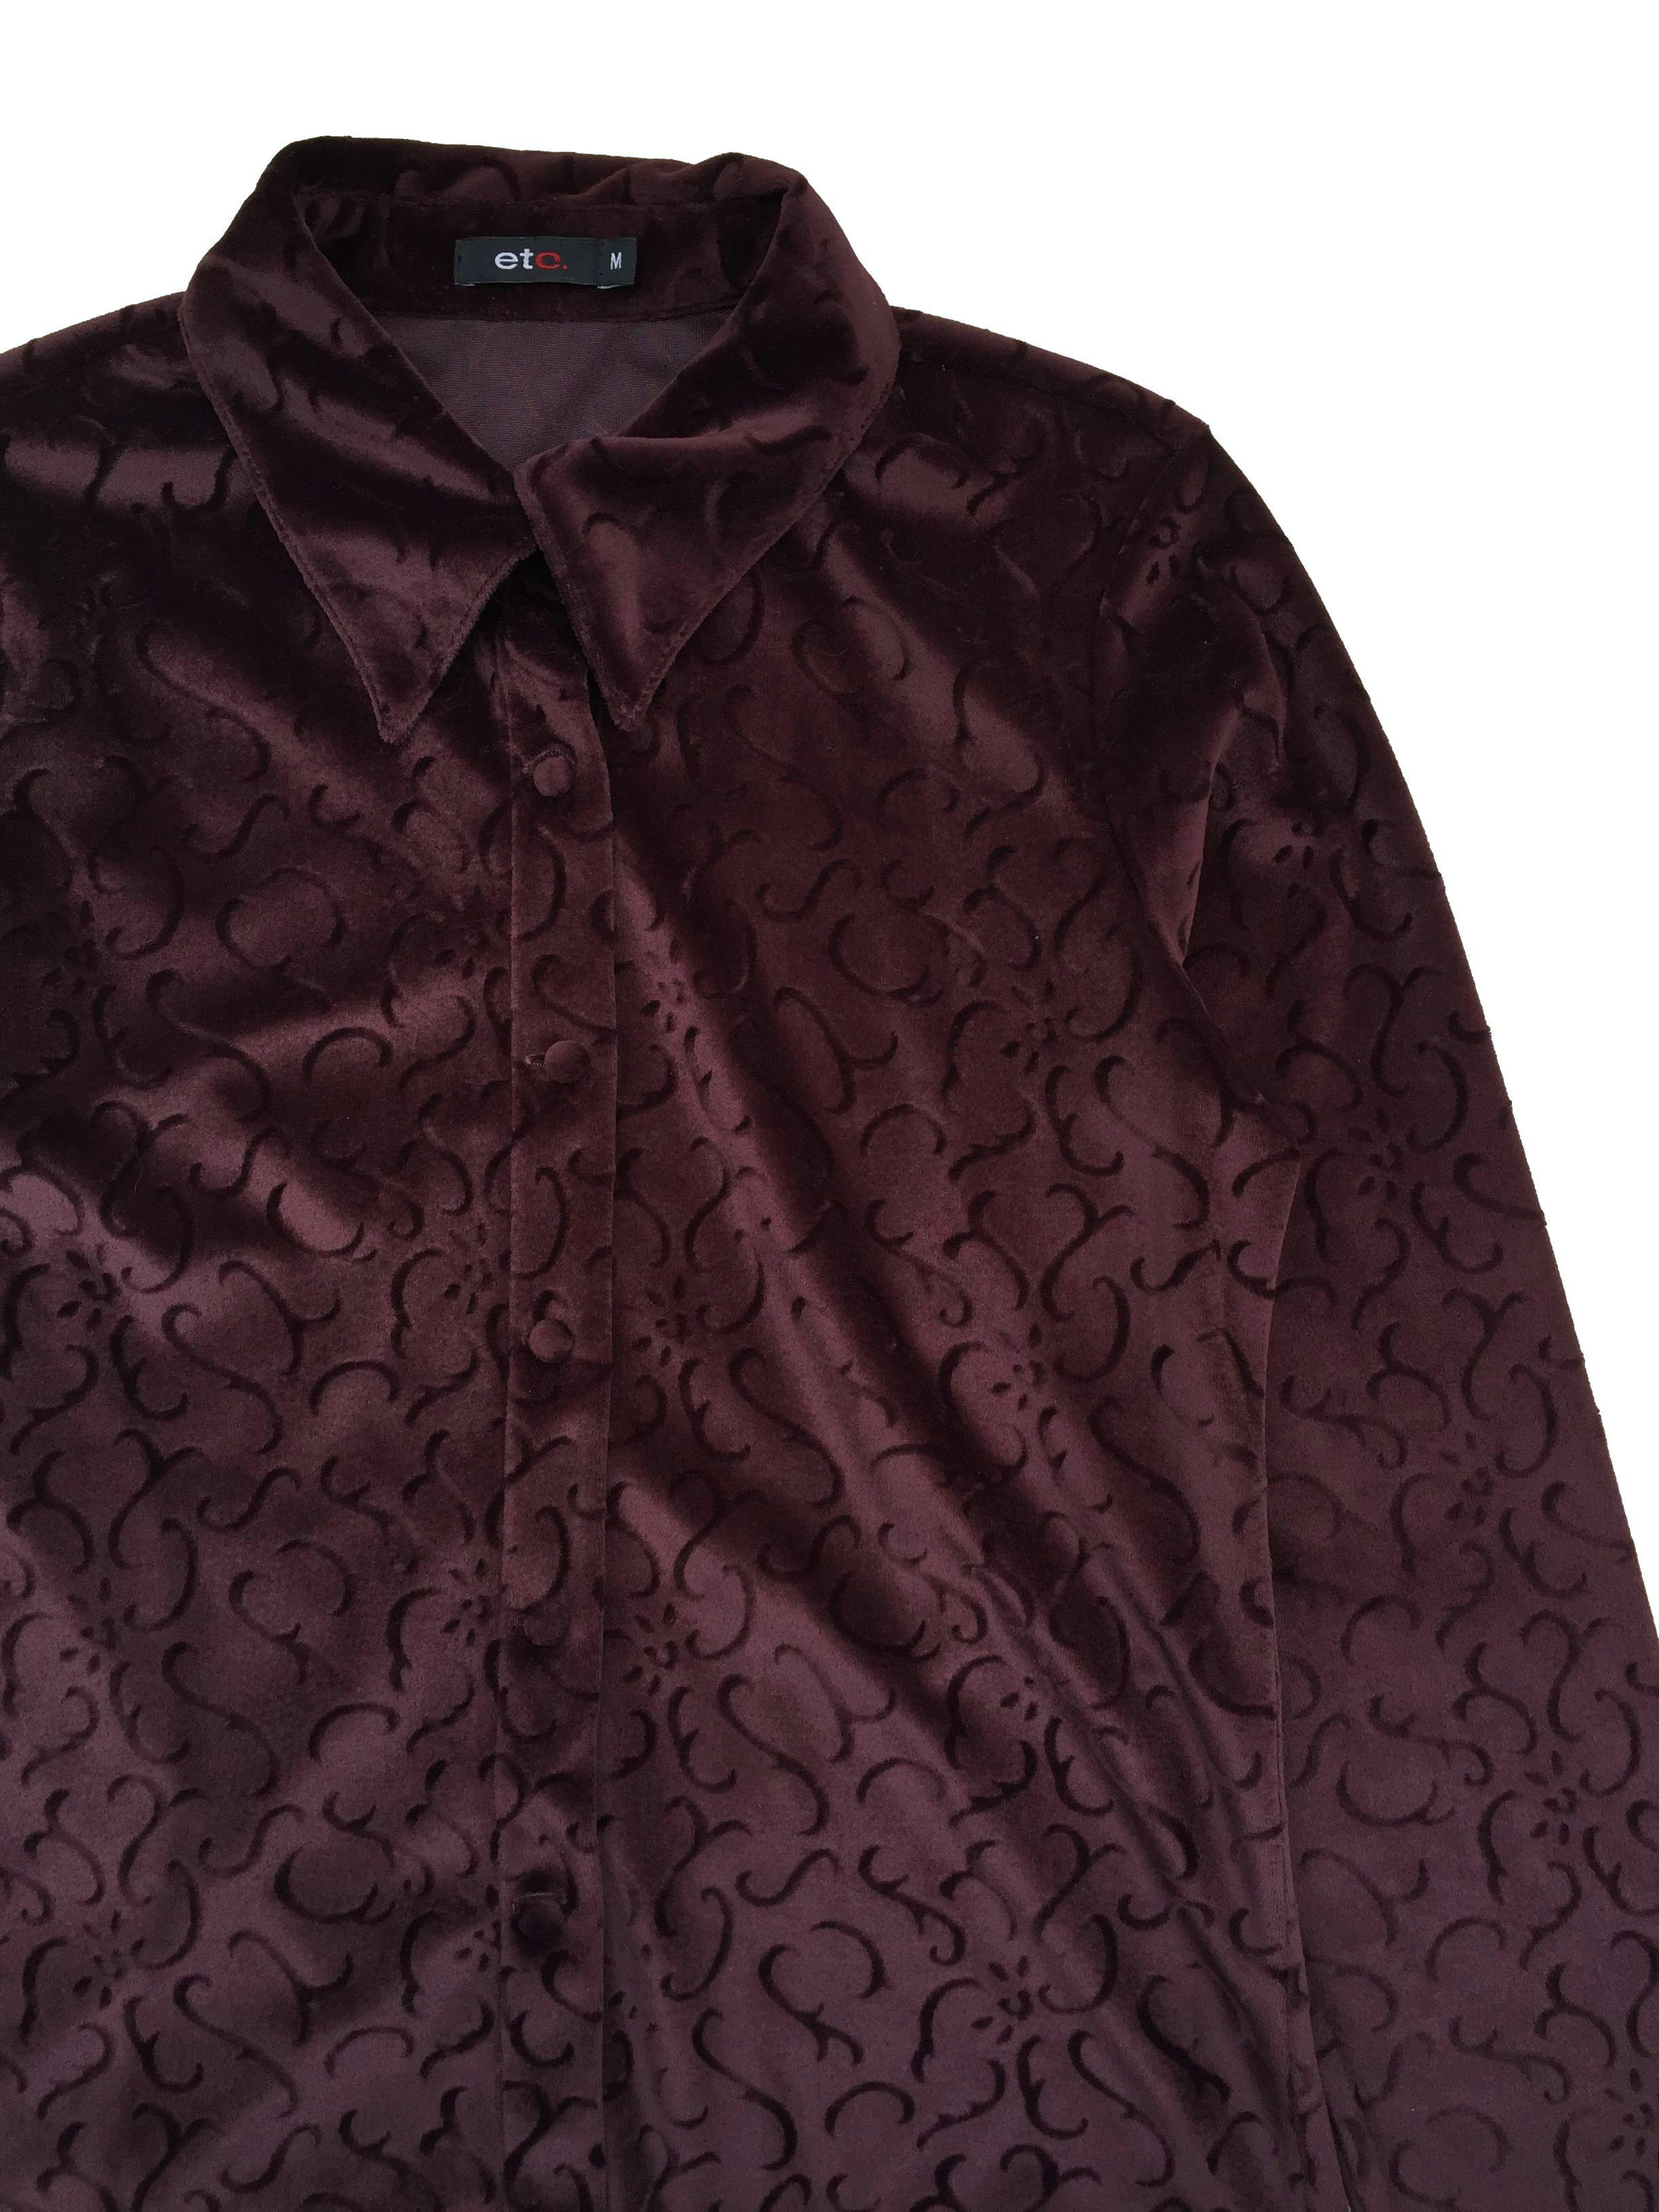 Blusa de plush marrón con texturas al tono, botones delanteros forrados. Busto 96cm Largo 55cm